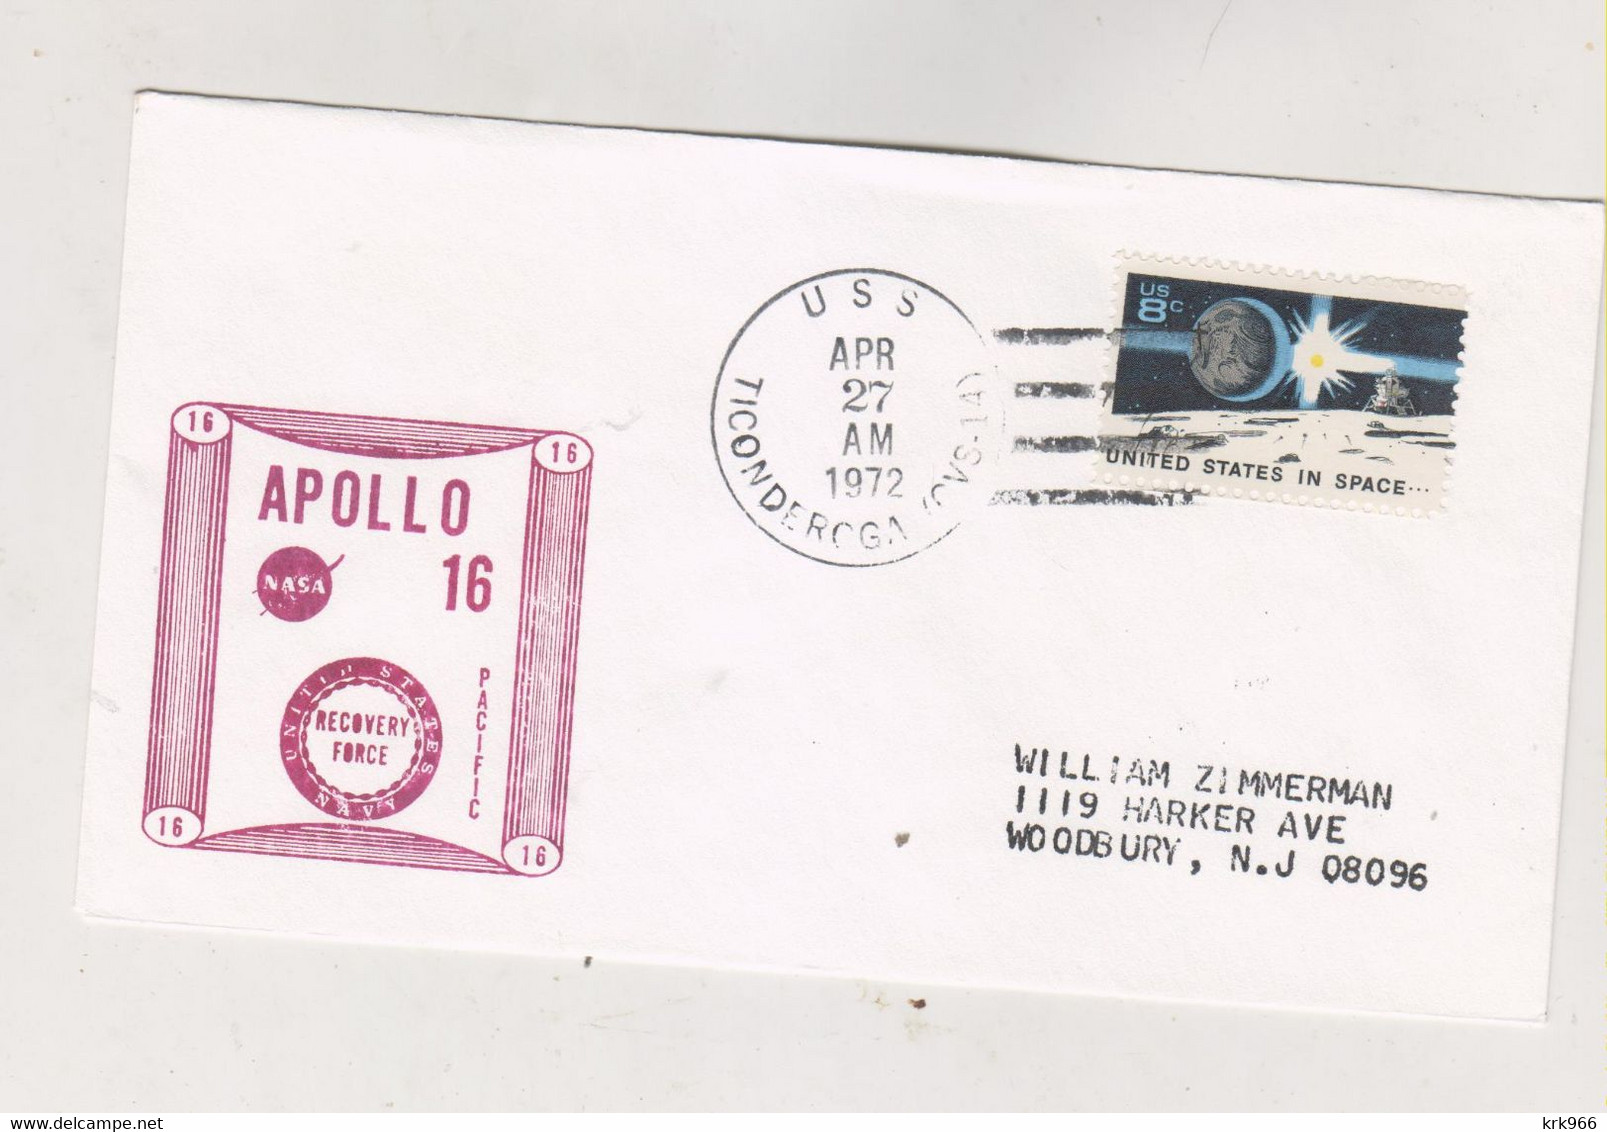 UNITED STATES SPACE 1972 APOLLO 16 Nice Cover - North  America